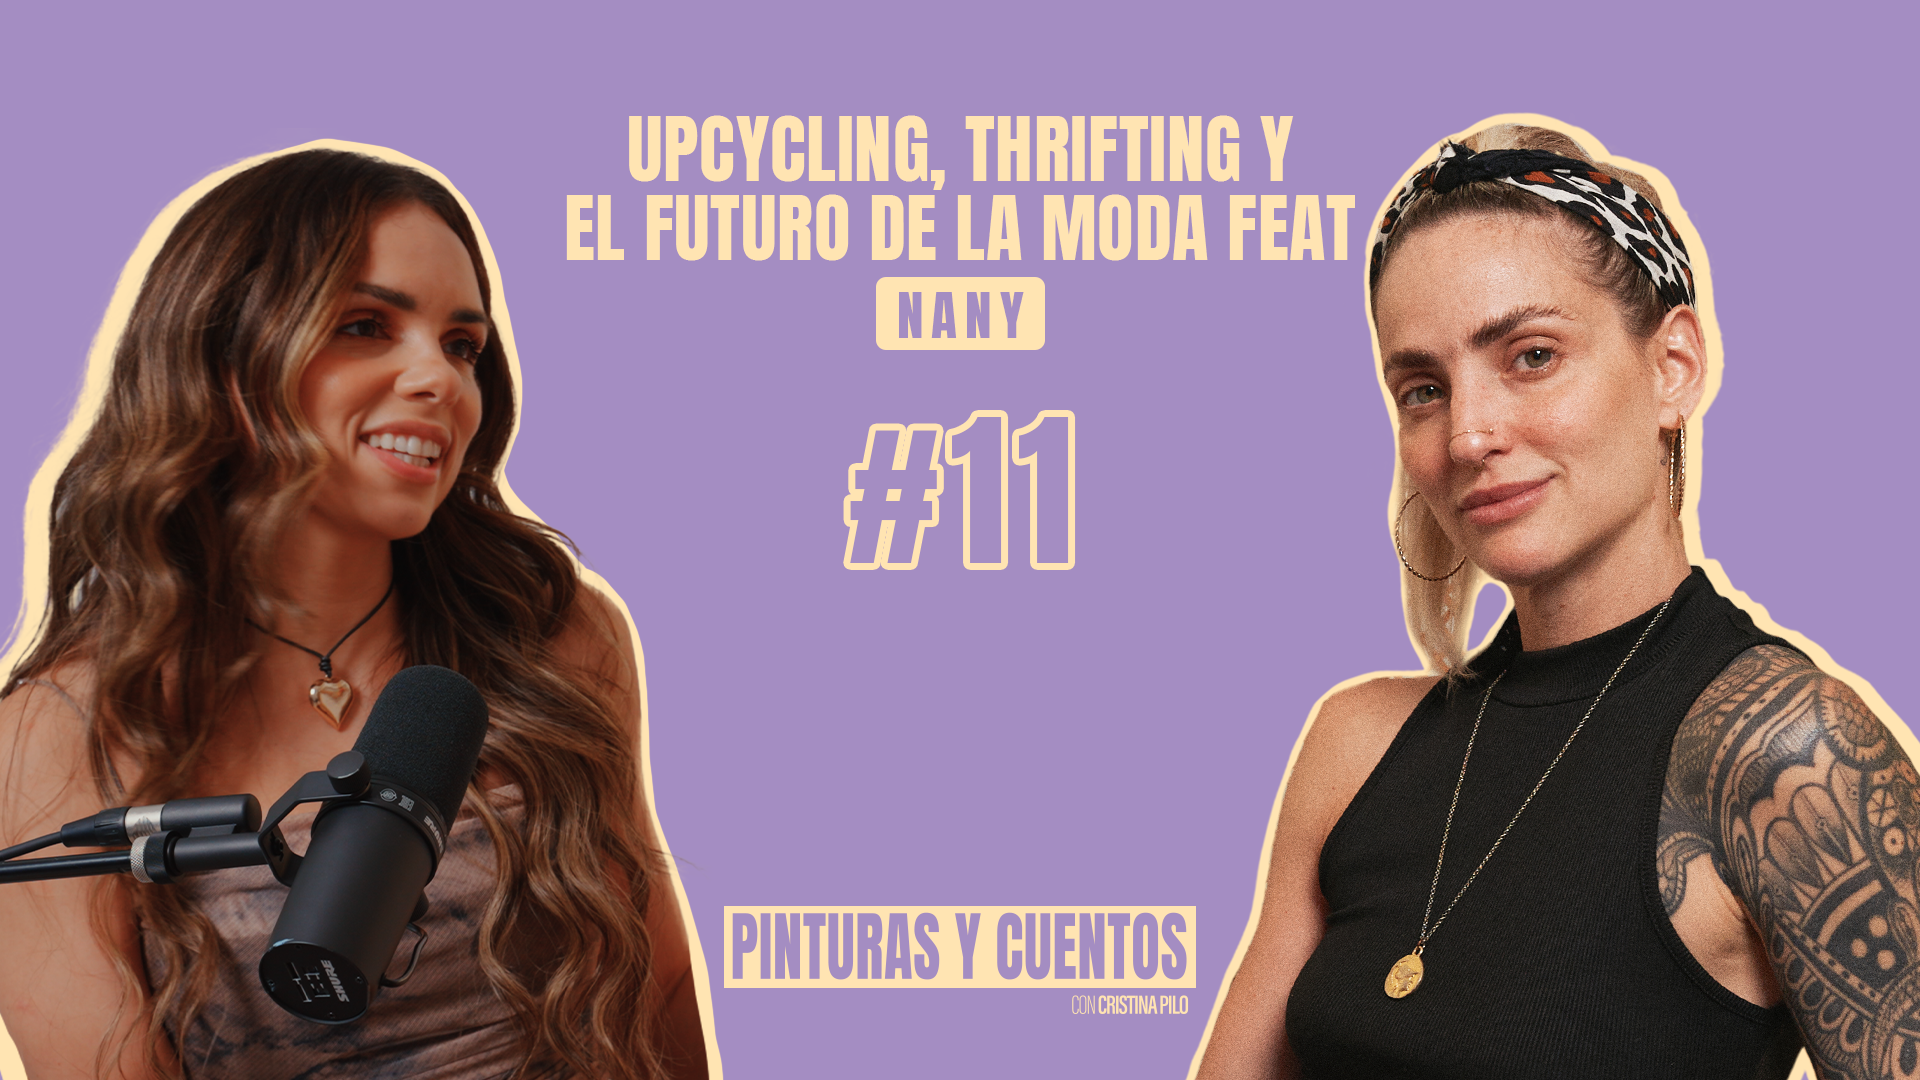 UPCYCLING, THRIFTING Y EL FUTURO DE LA MODA Ft. NANY | PINTURAS Y CUENTOS | #EP11